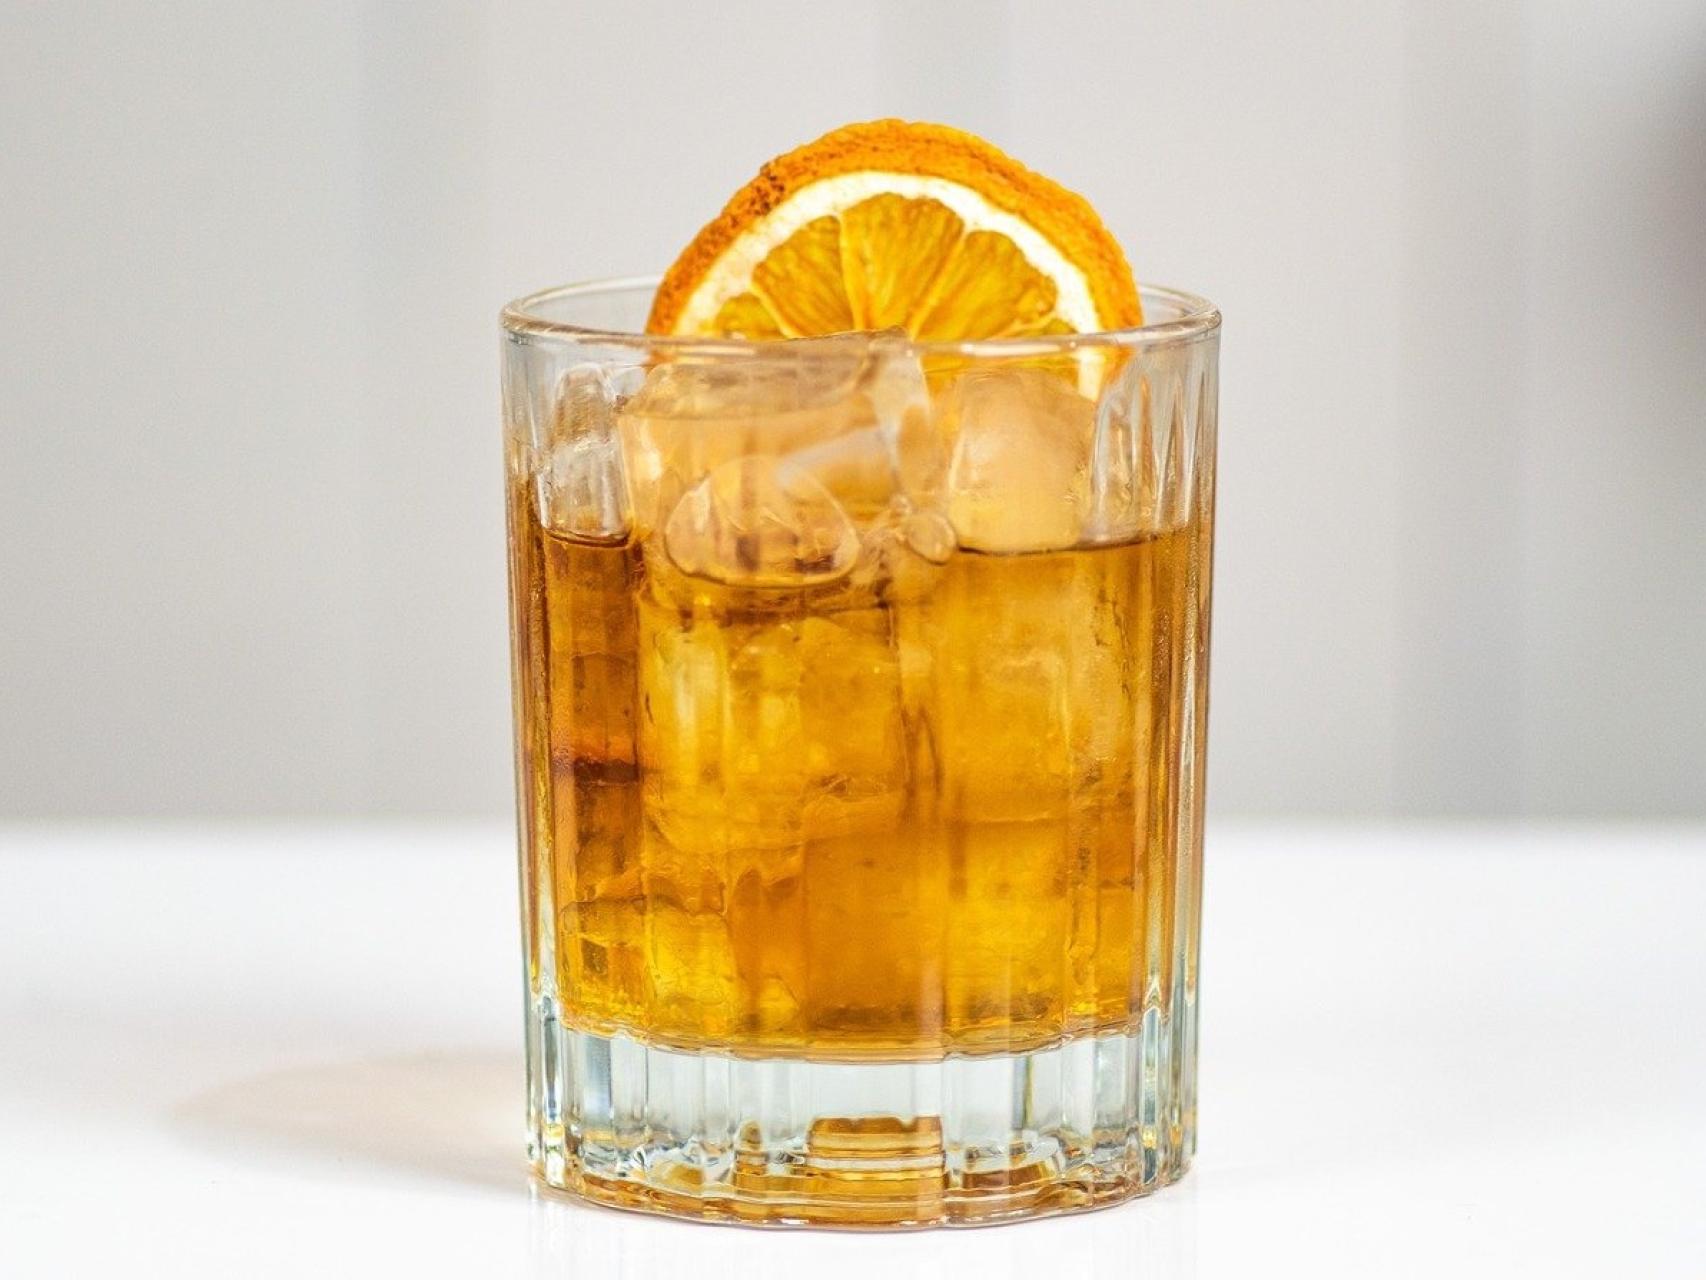 5 cócteles con brandy, una que no se toma en la sobremesa